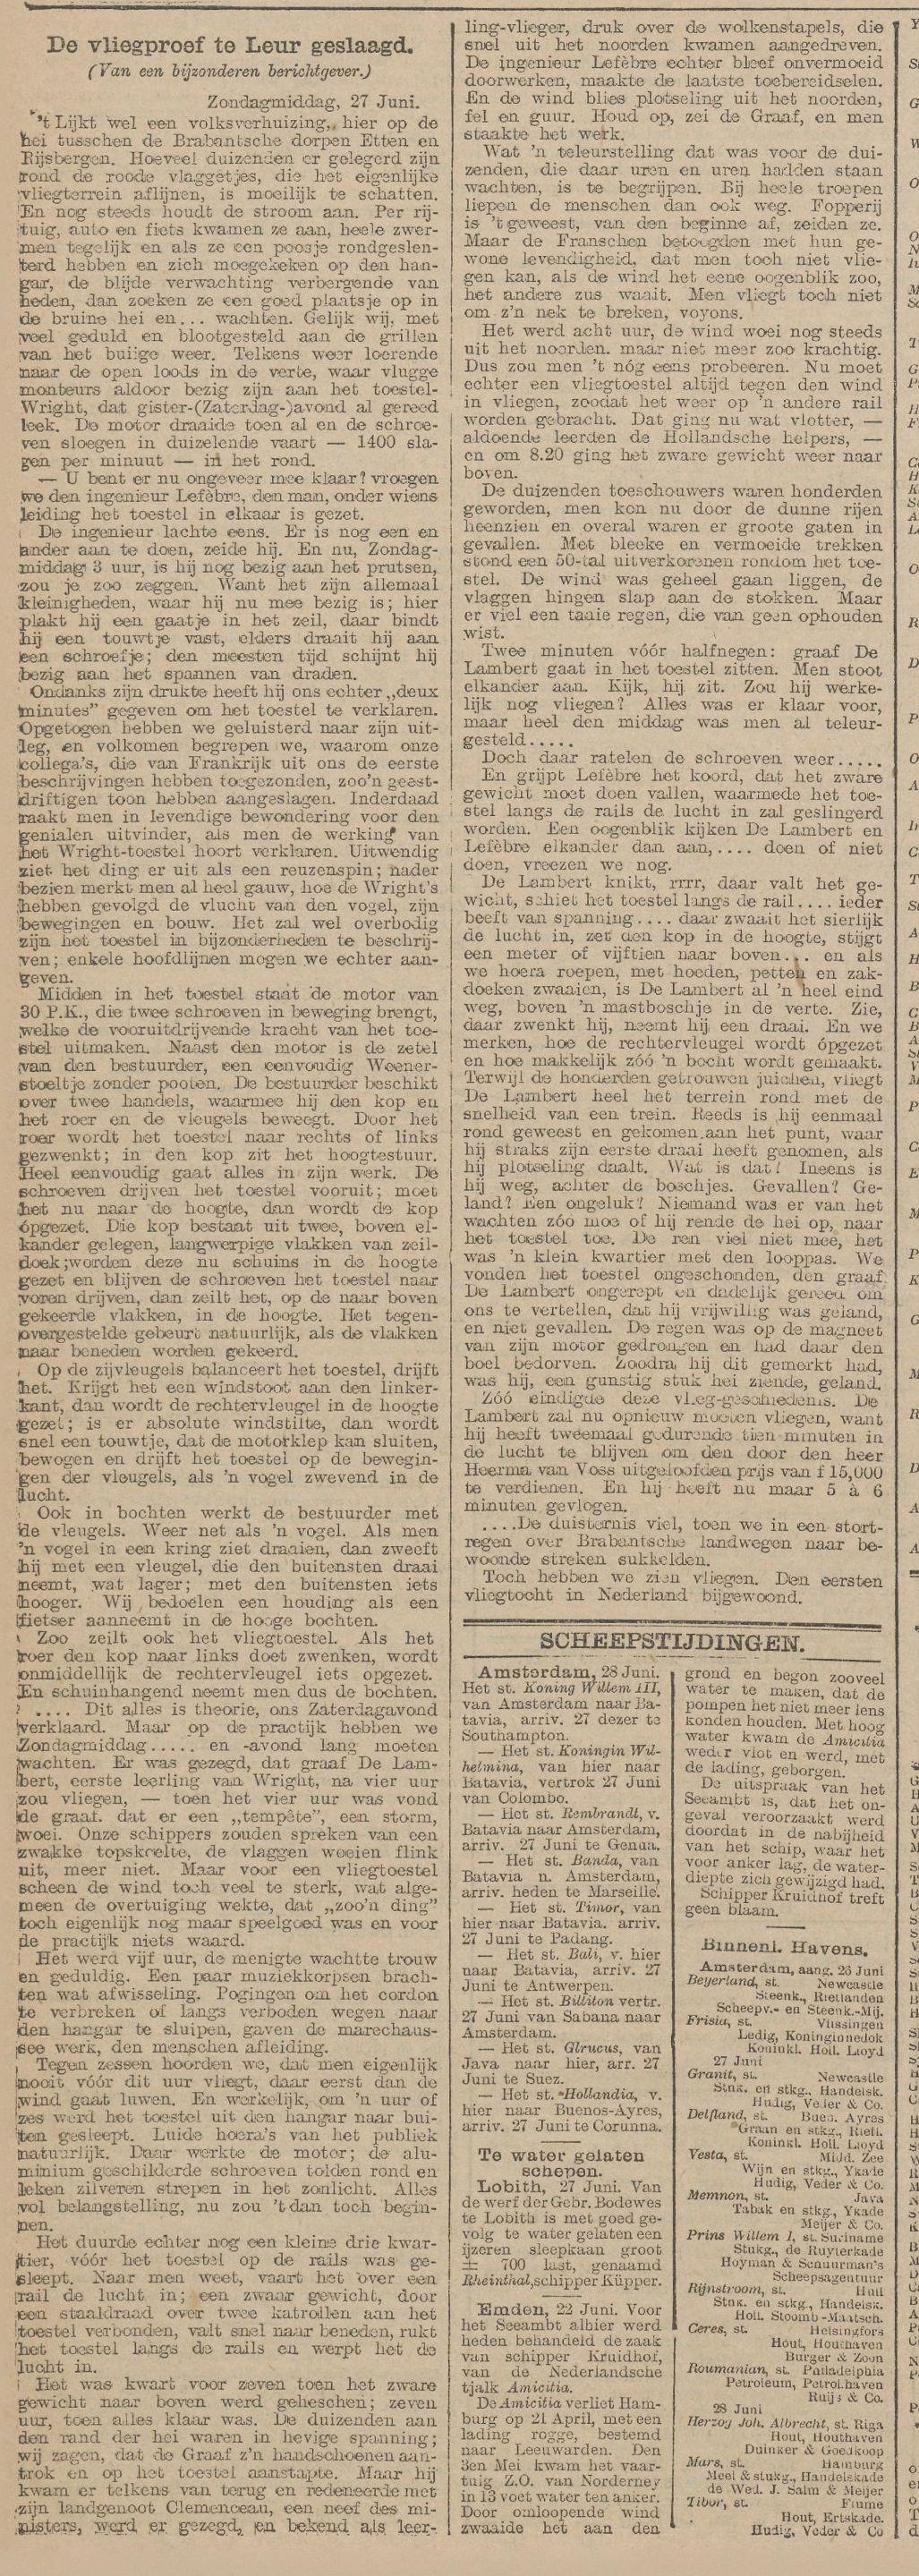 Nieuws van de Dag, 28-06-1909